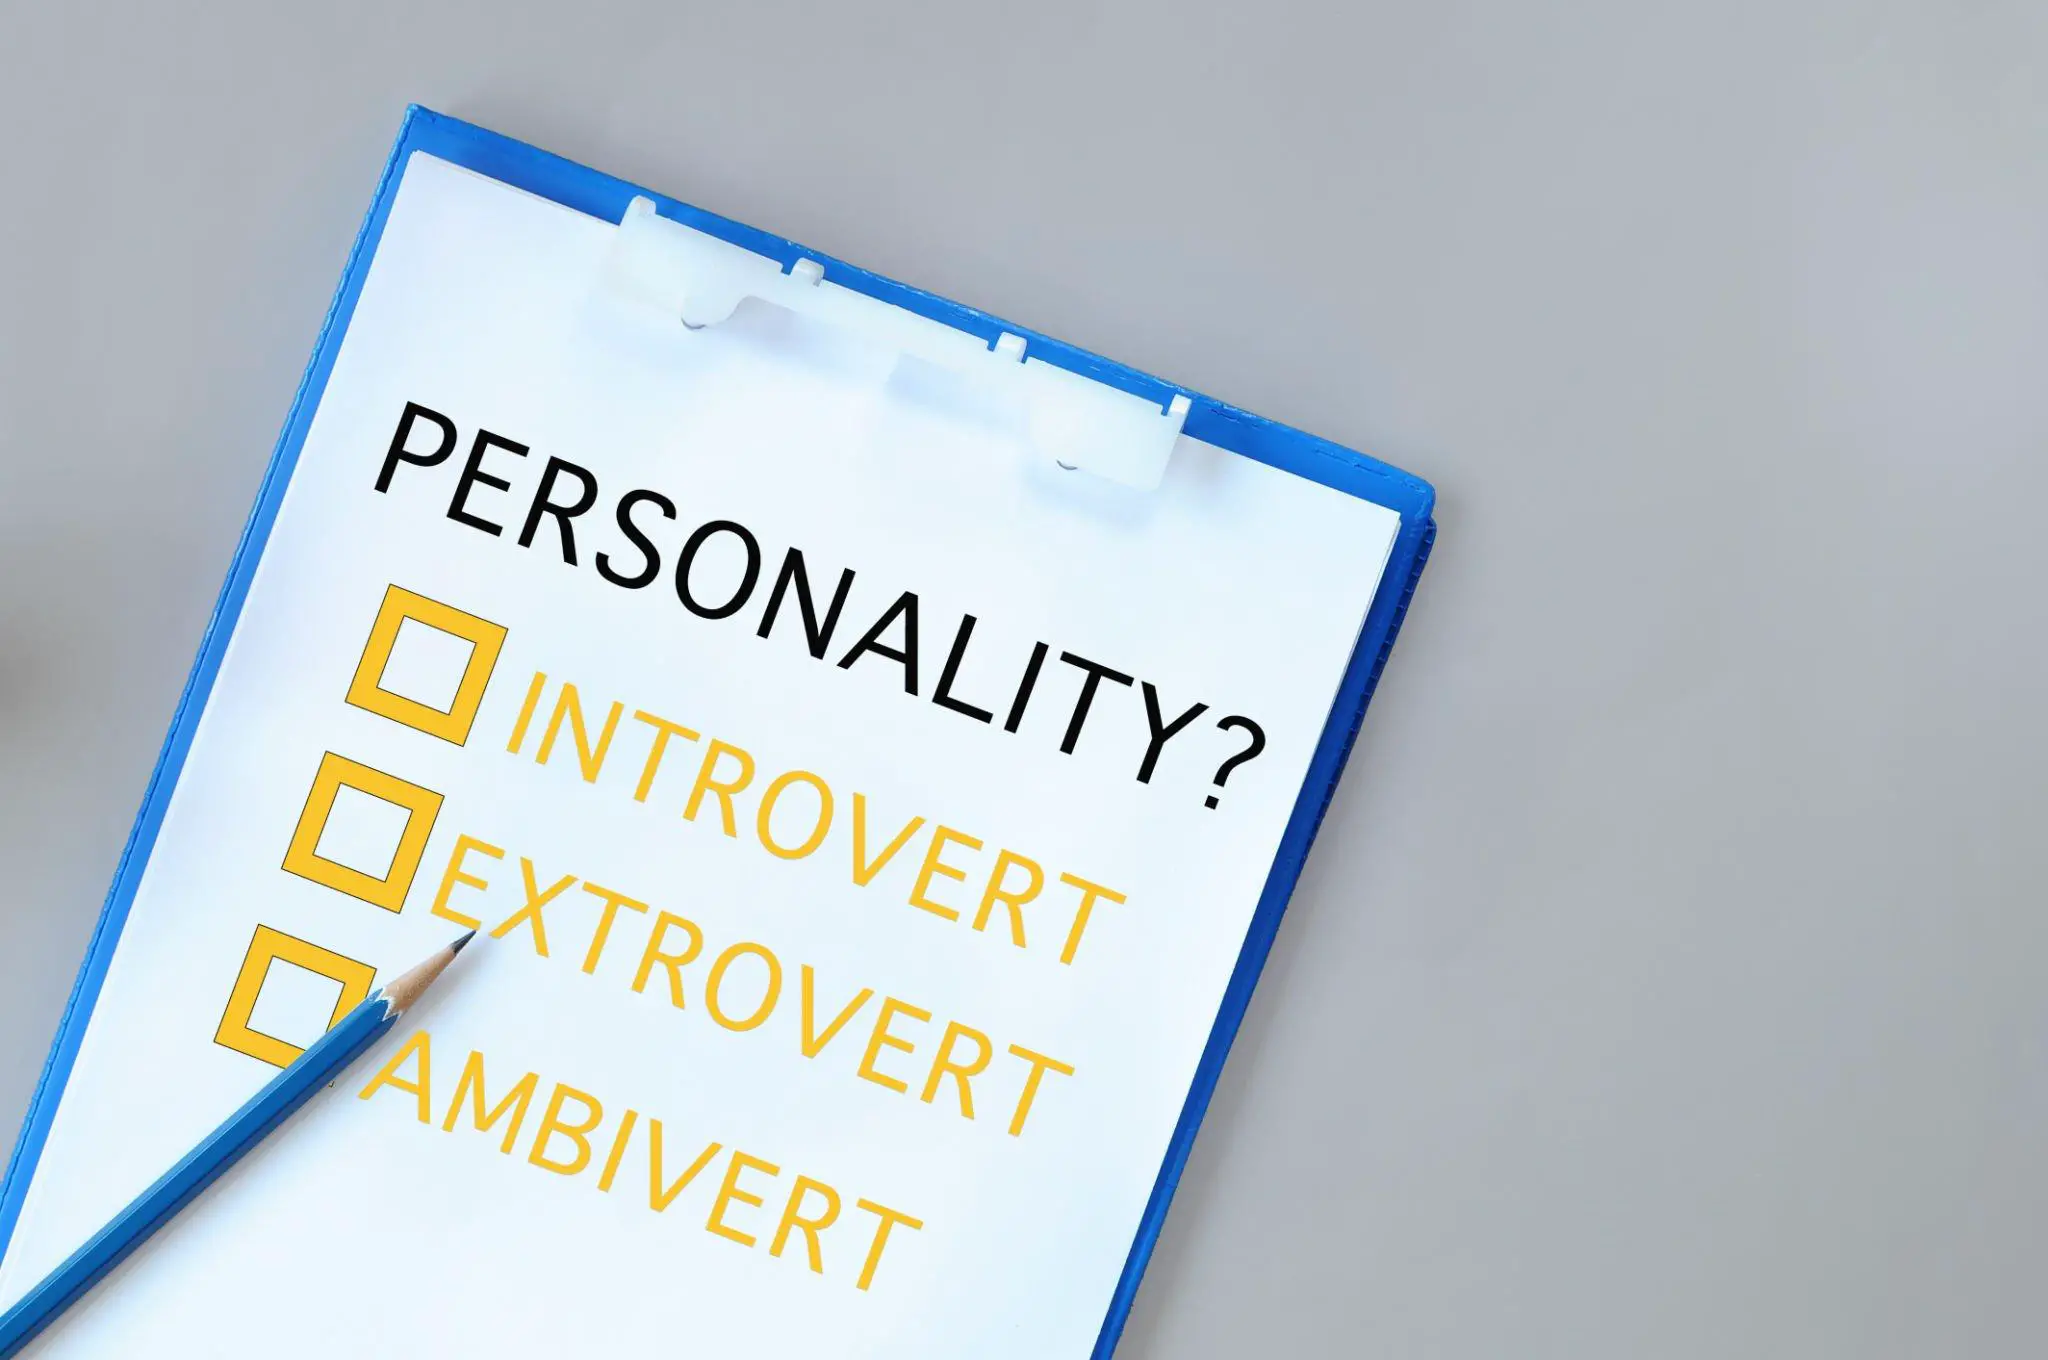 Can an Extrovert Become an Introvert?